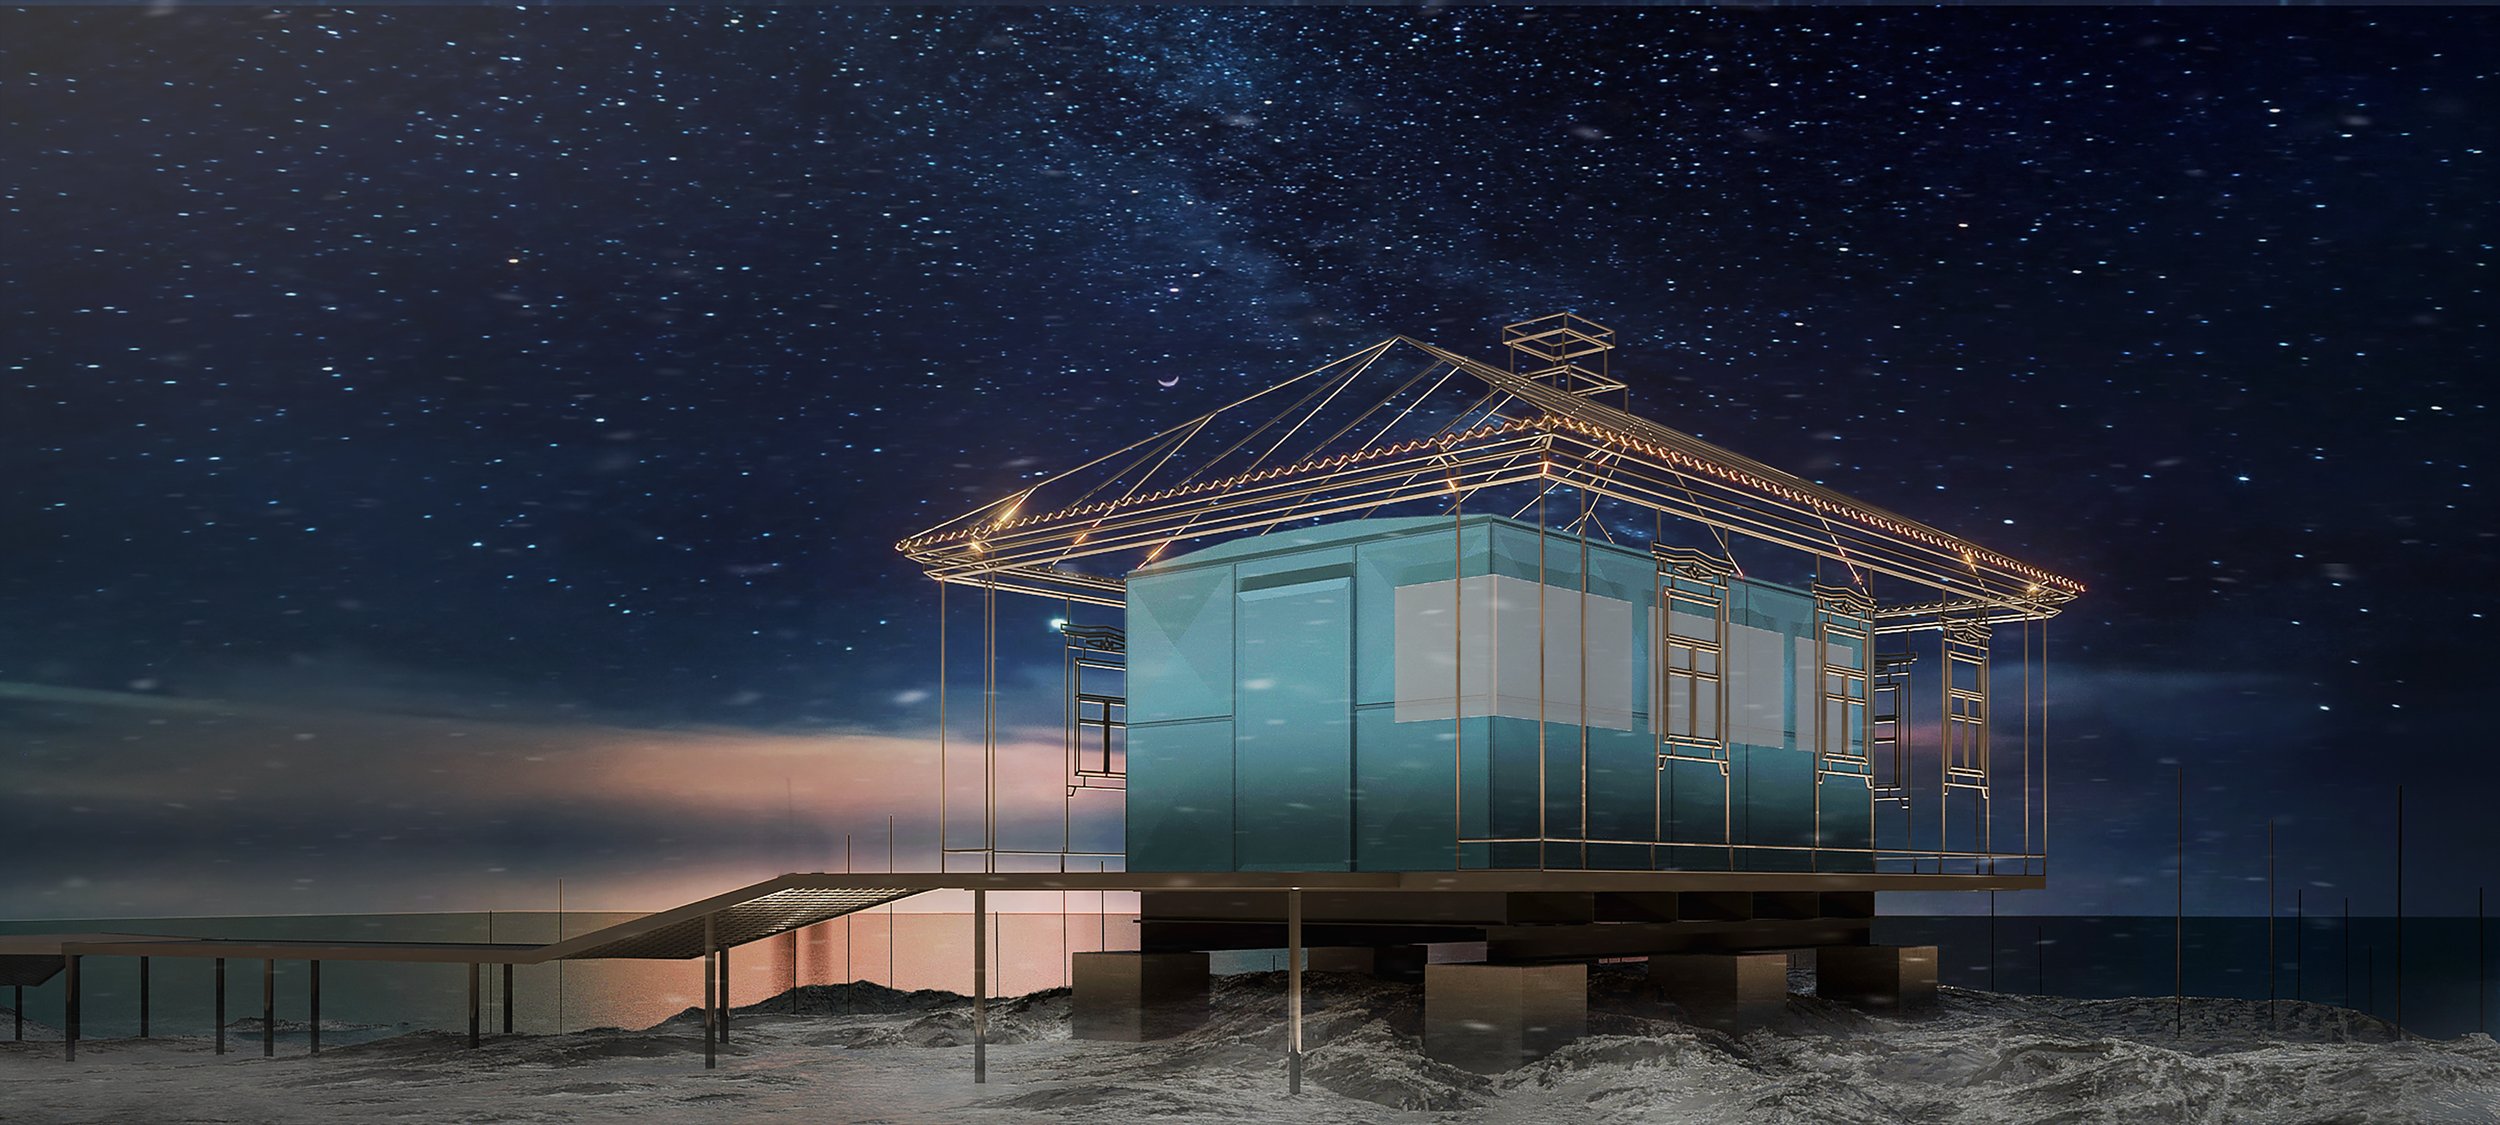 Украинские дизайнеры установят арт-инсталляцию в Антарктиде. Как она выглядит